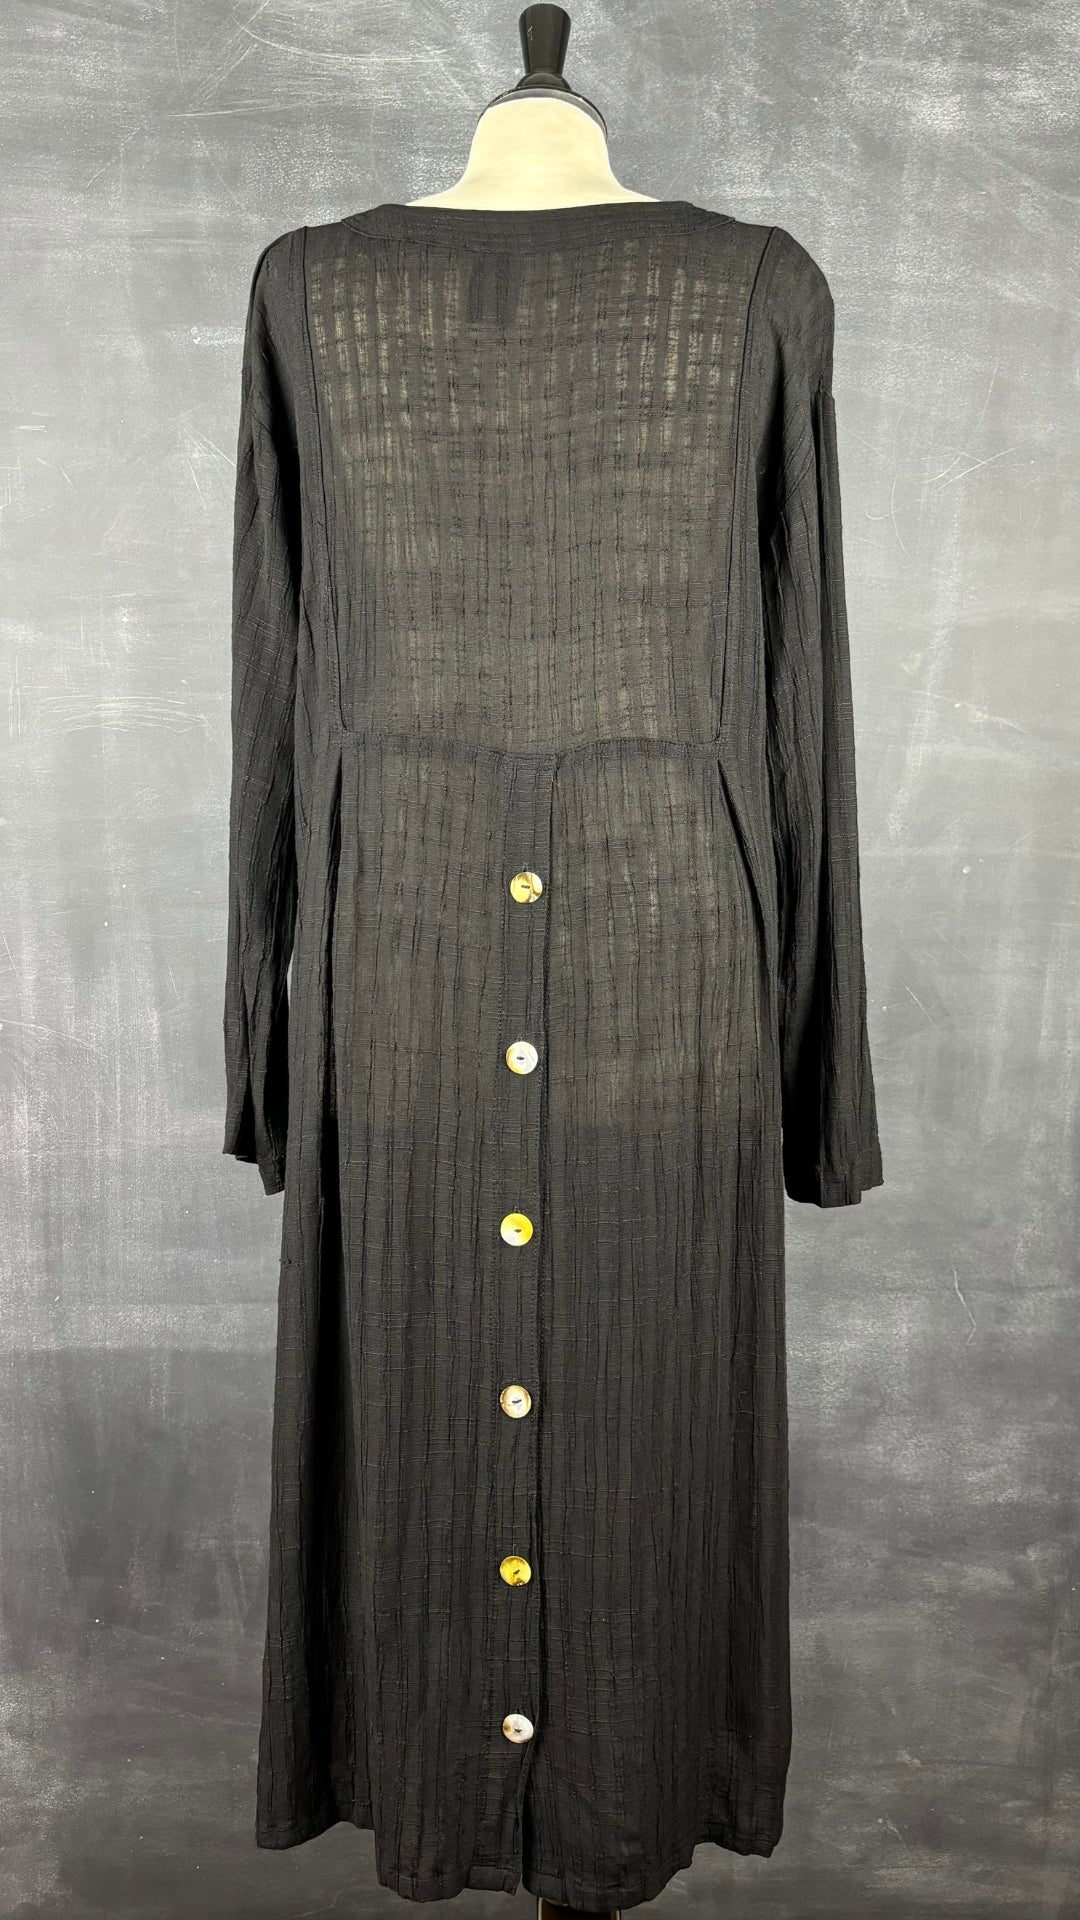 Robe longue noire texturée en mélange de lin Kaliyana, taille m/l. Vue de dos.